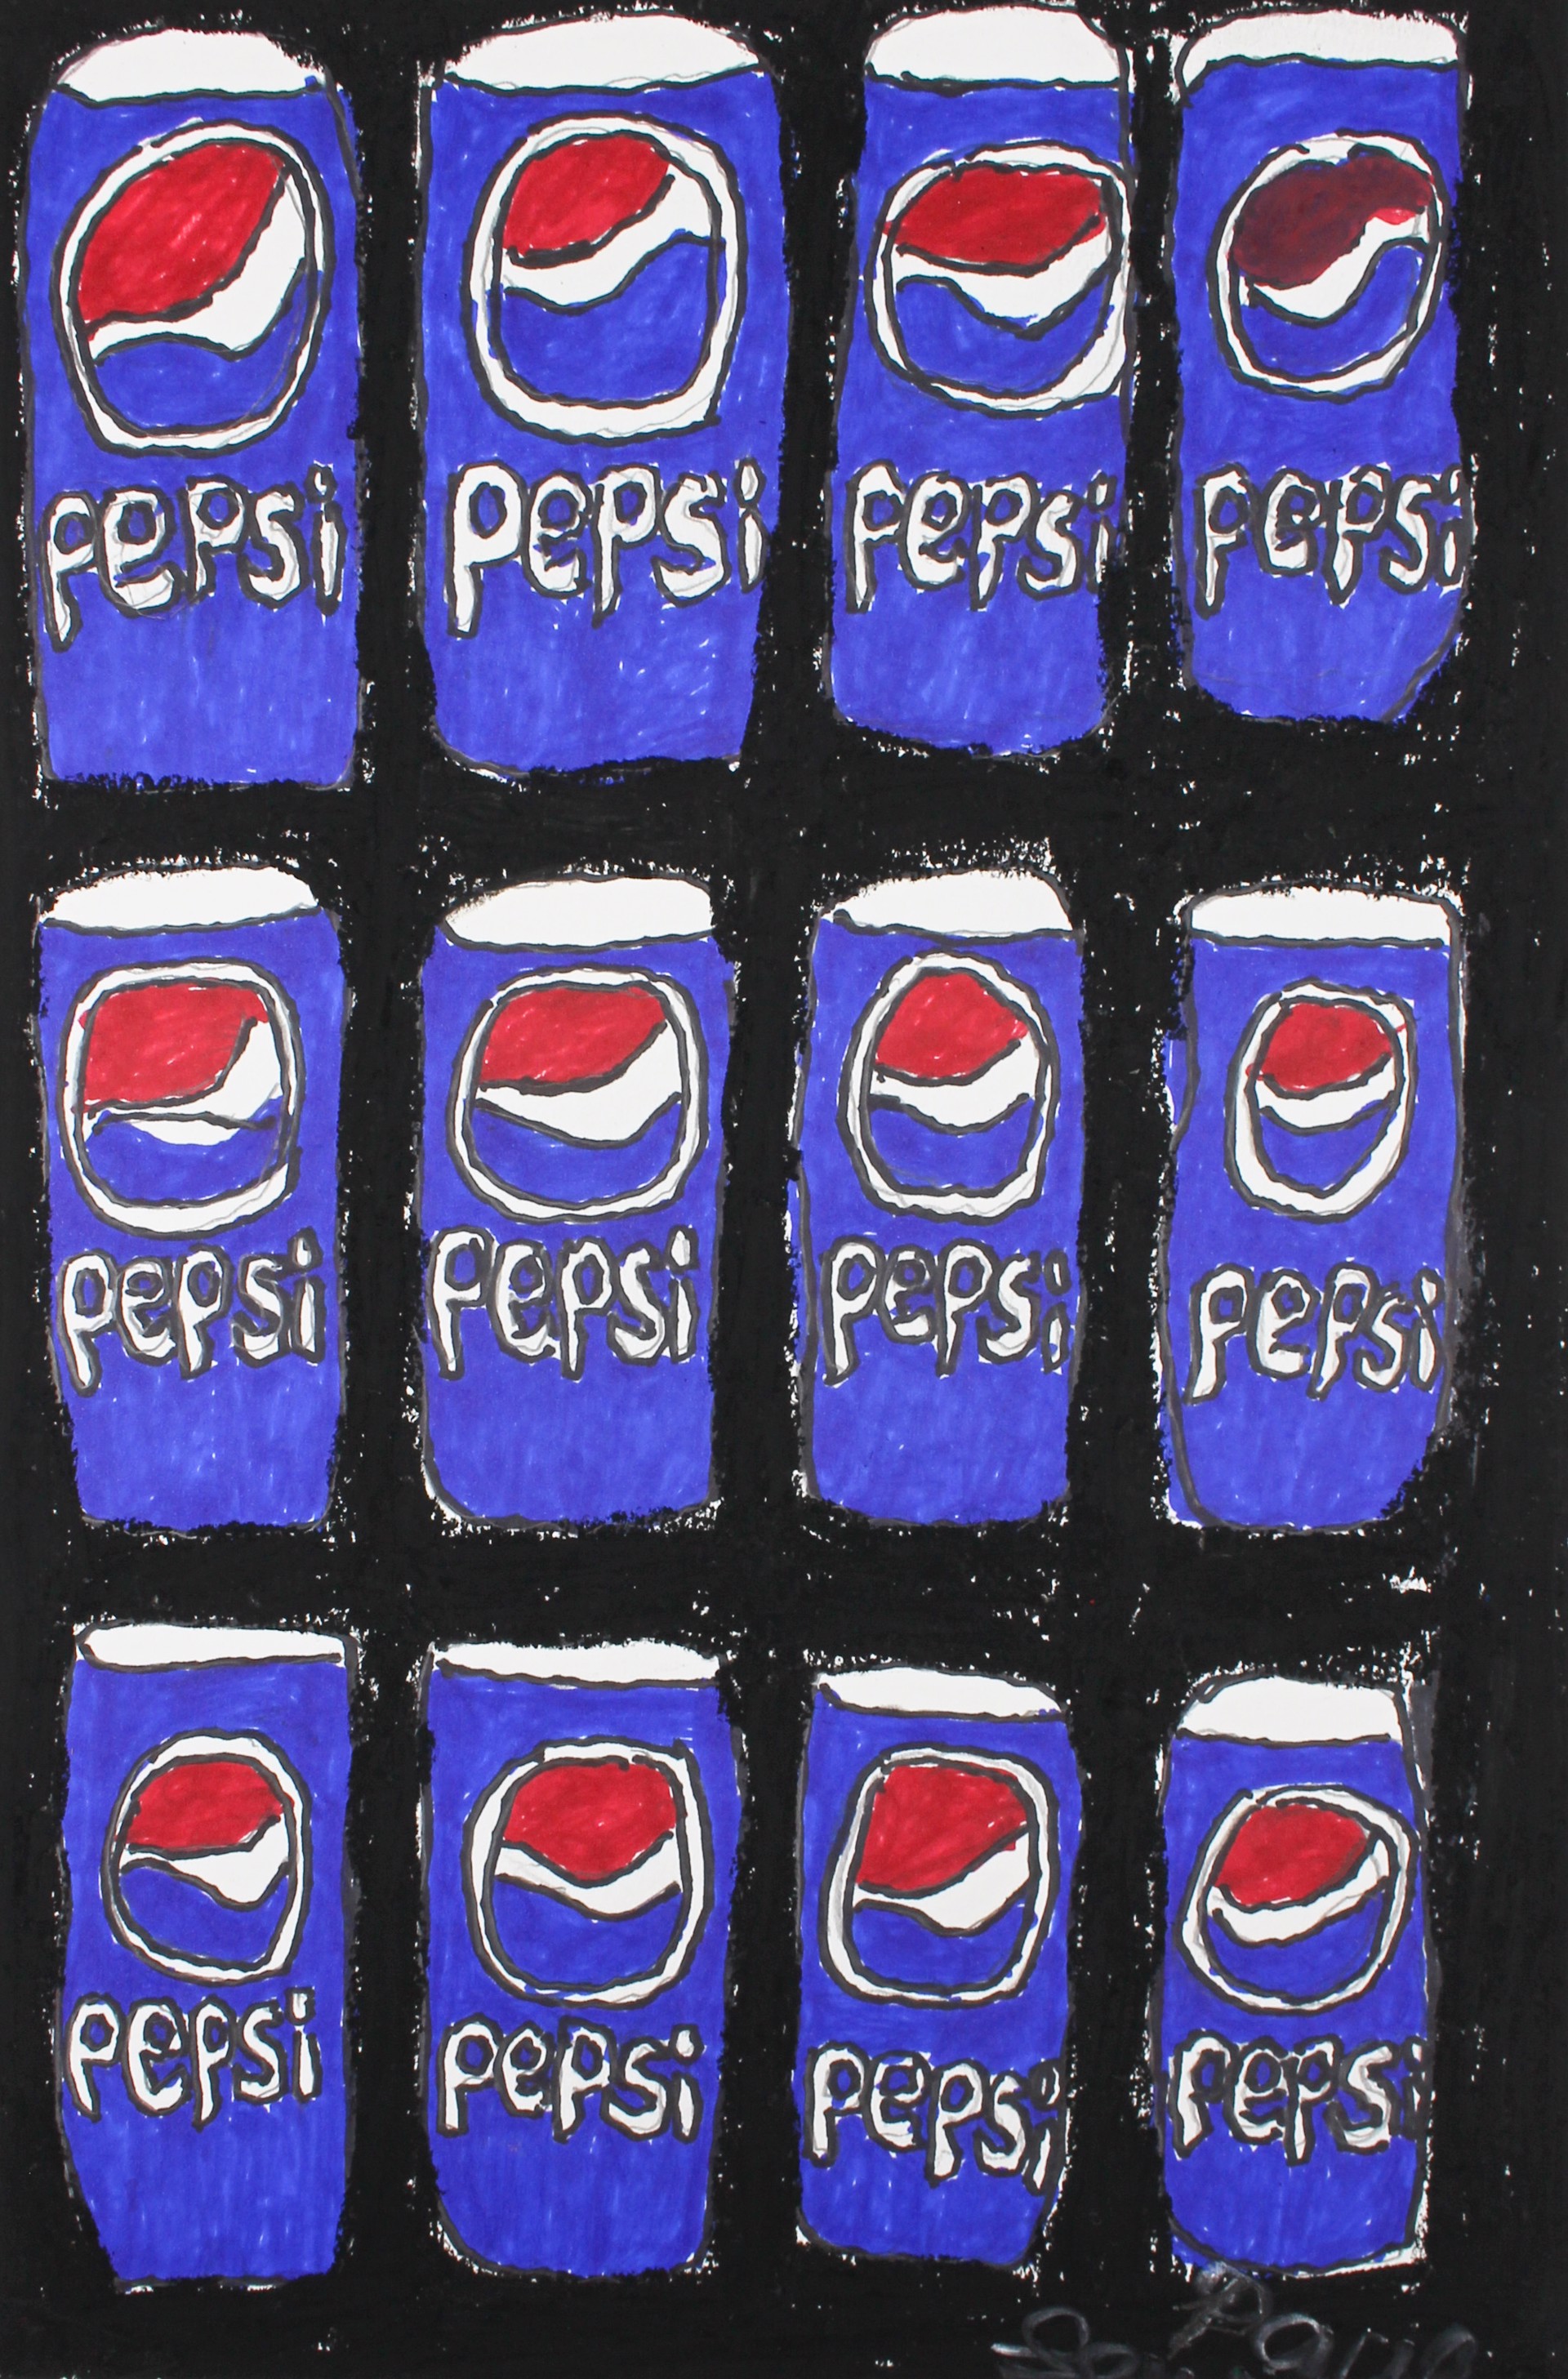 6 Pack Pepsi Cola by Paul Lewis